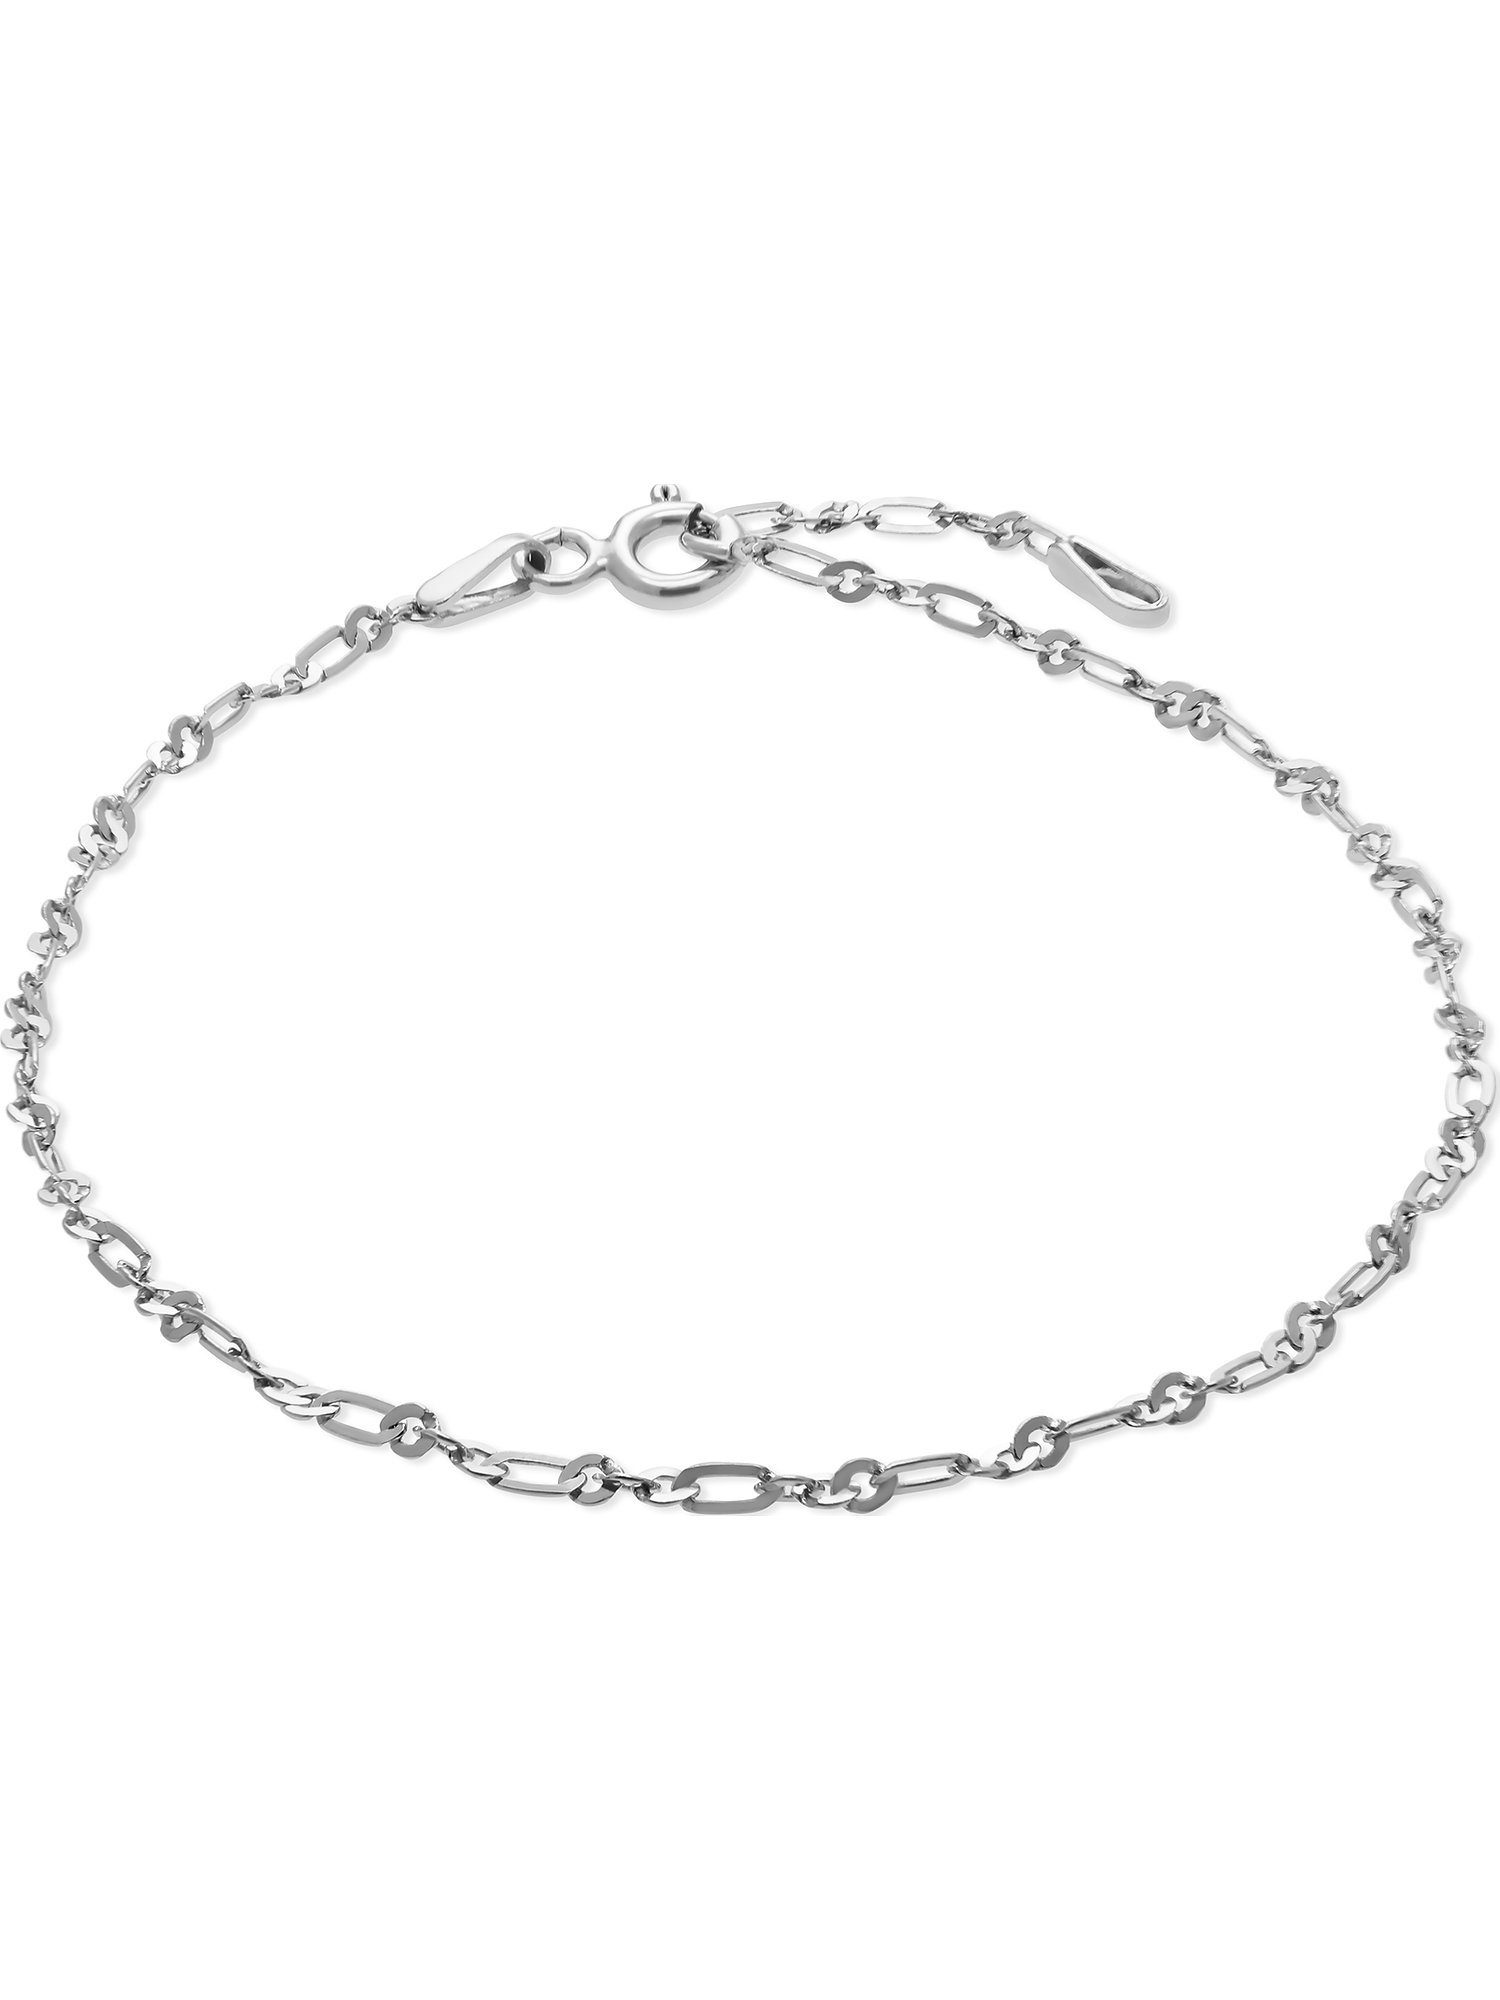 FAVS Silberarmband FAVS Unisex-Armband 925er Silber, Klassisch, Maßangaben:  Länge: 19 cm, Zwischenöse bei: 17 cm, Stärke: 0,6 mm